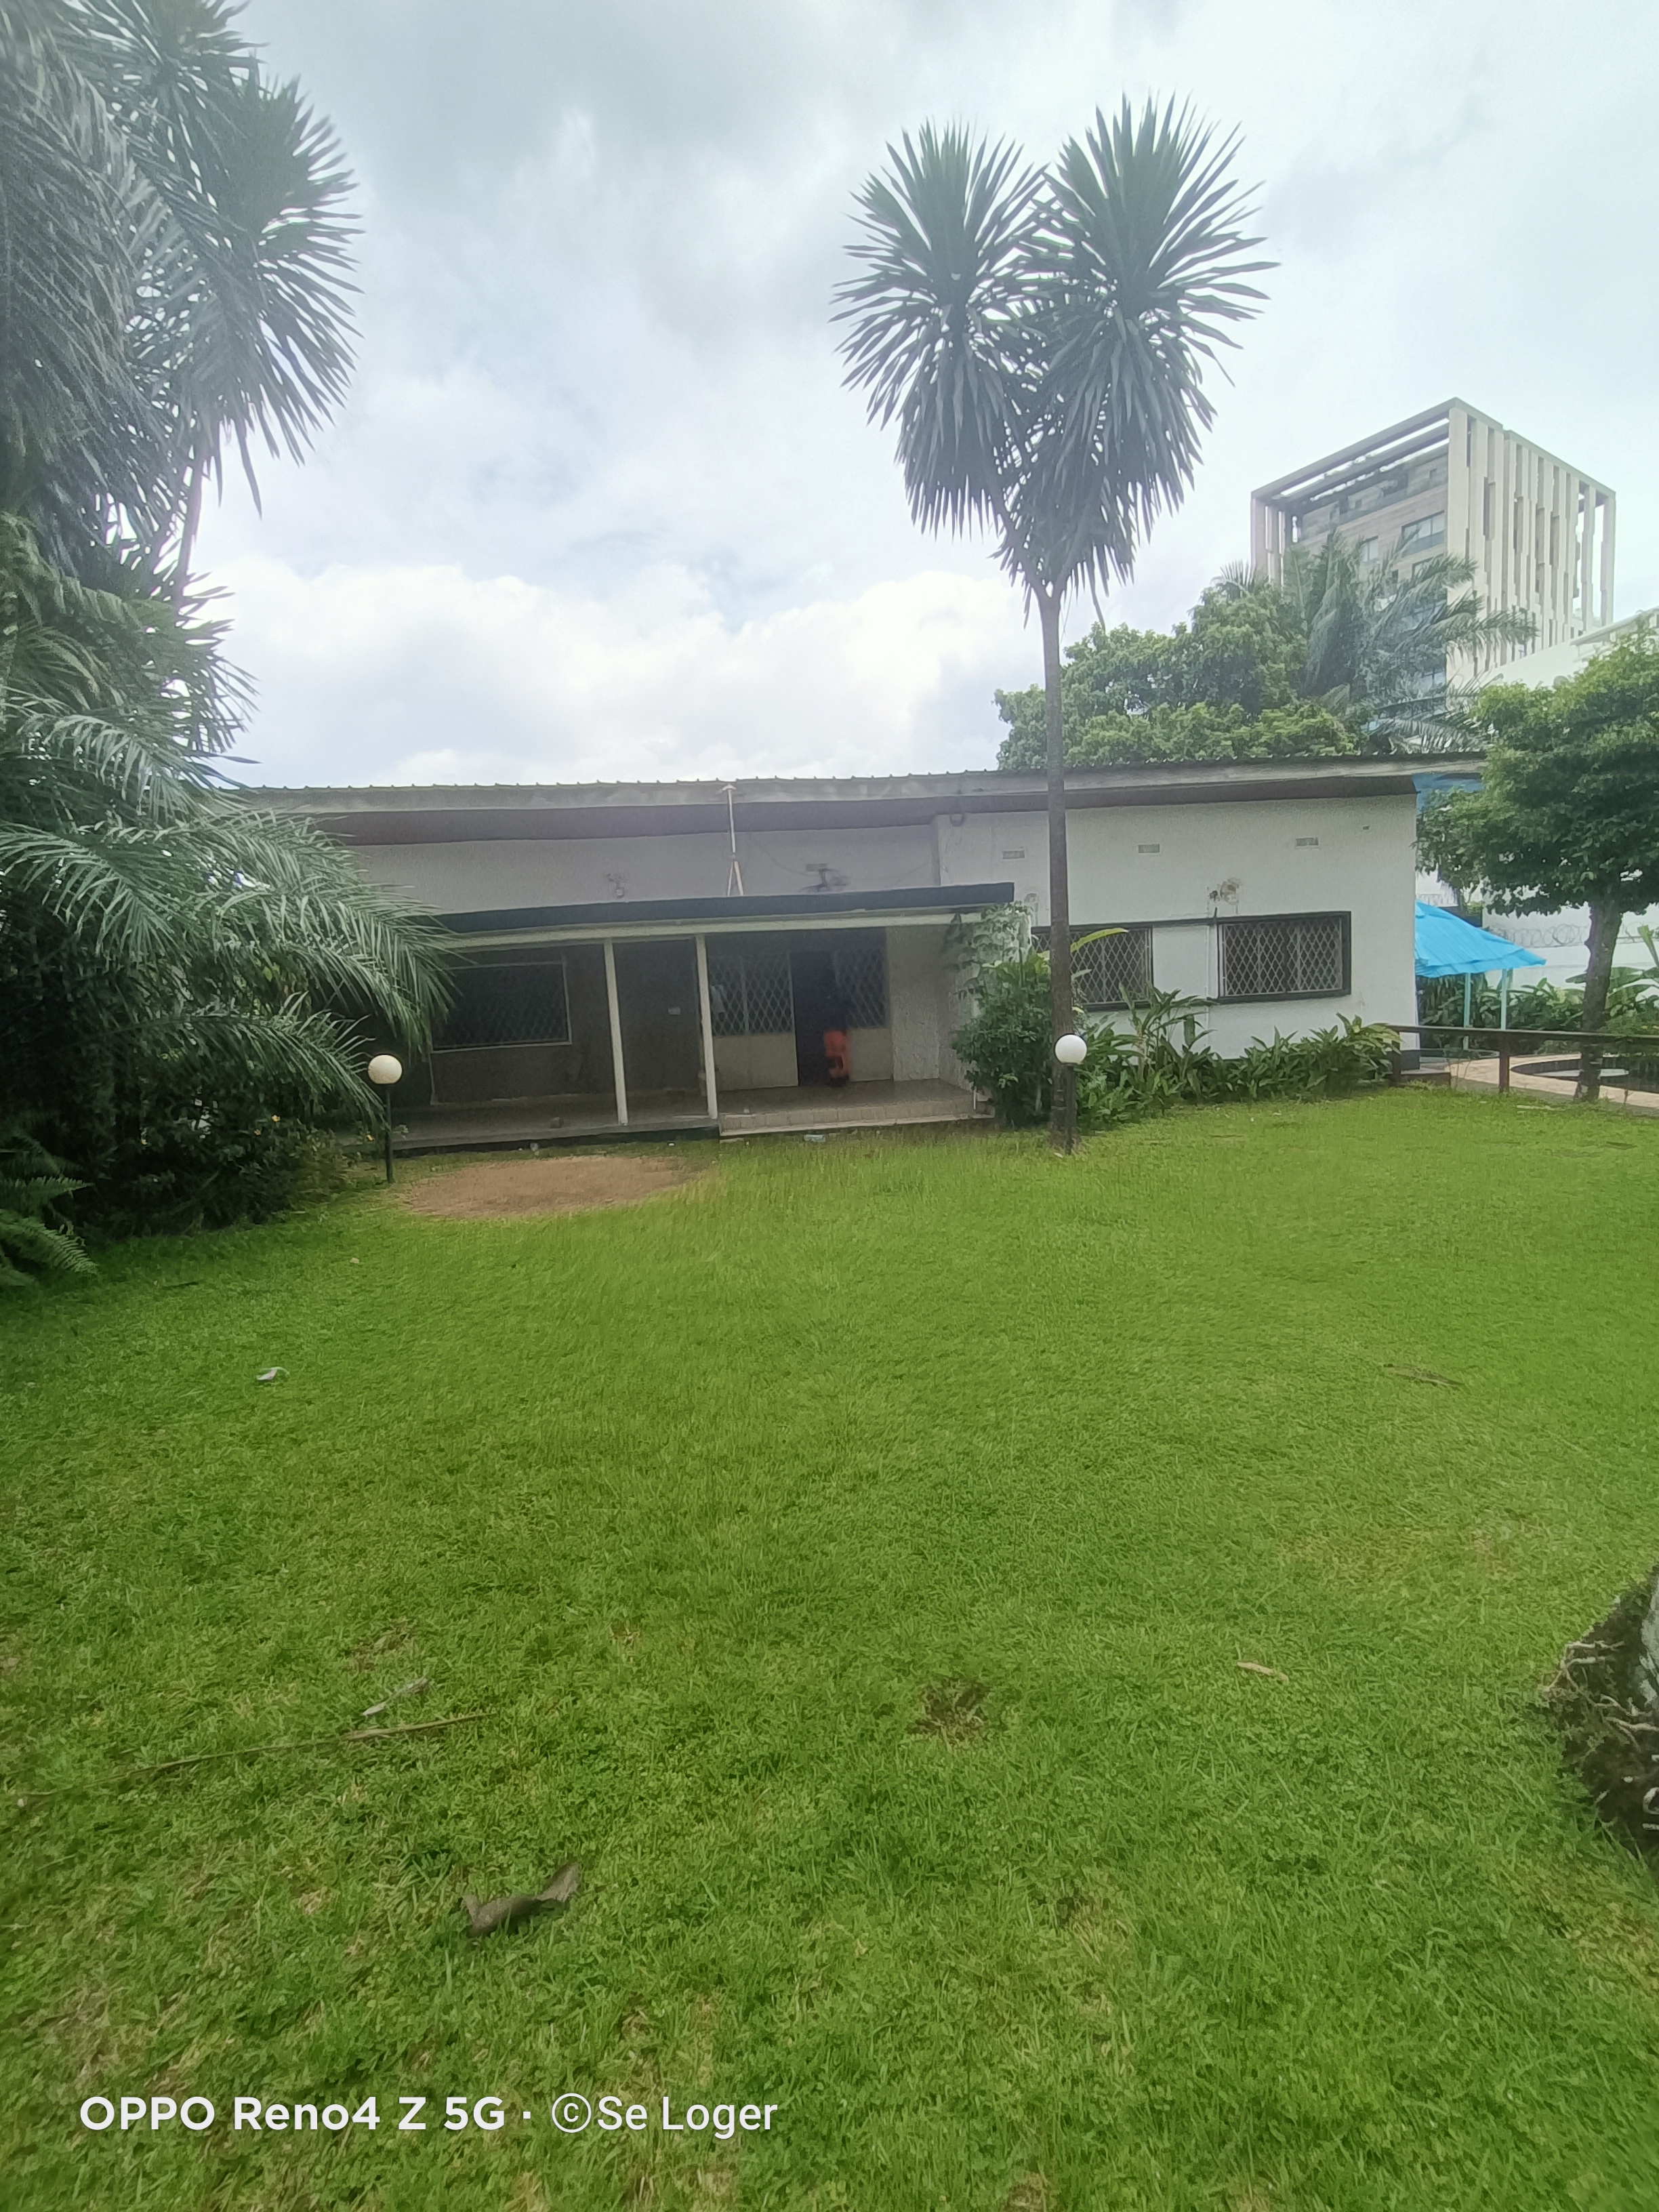 Maison (Villa) à louer - Douala, Bonapriso, H - 1 salon(s), 3 chambre(s), 3 salle(s) de bains - 2 300 000 FCFA / mois